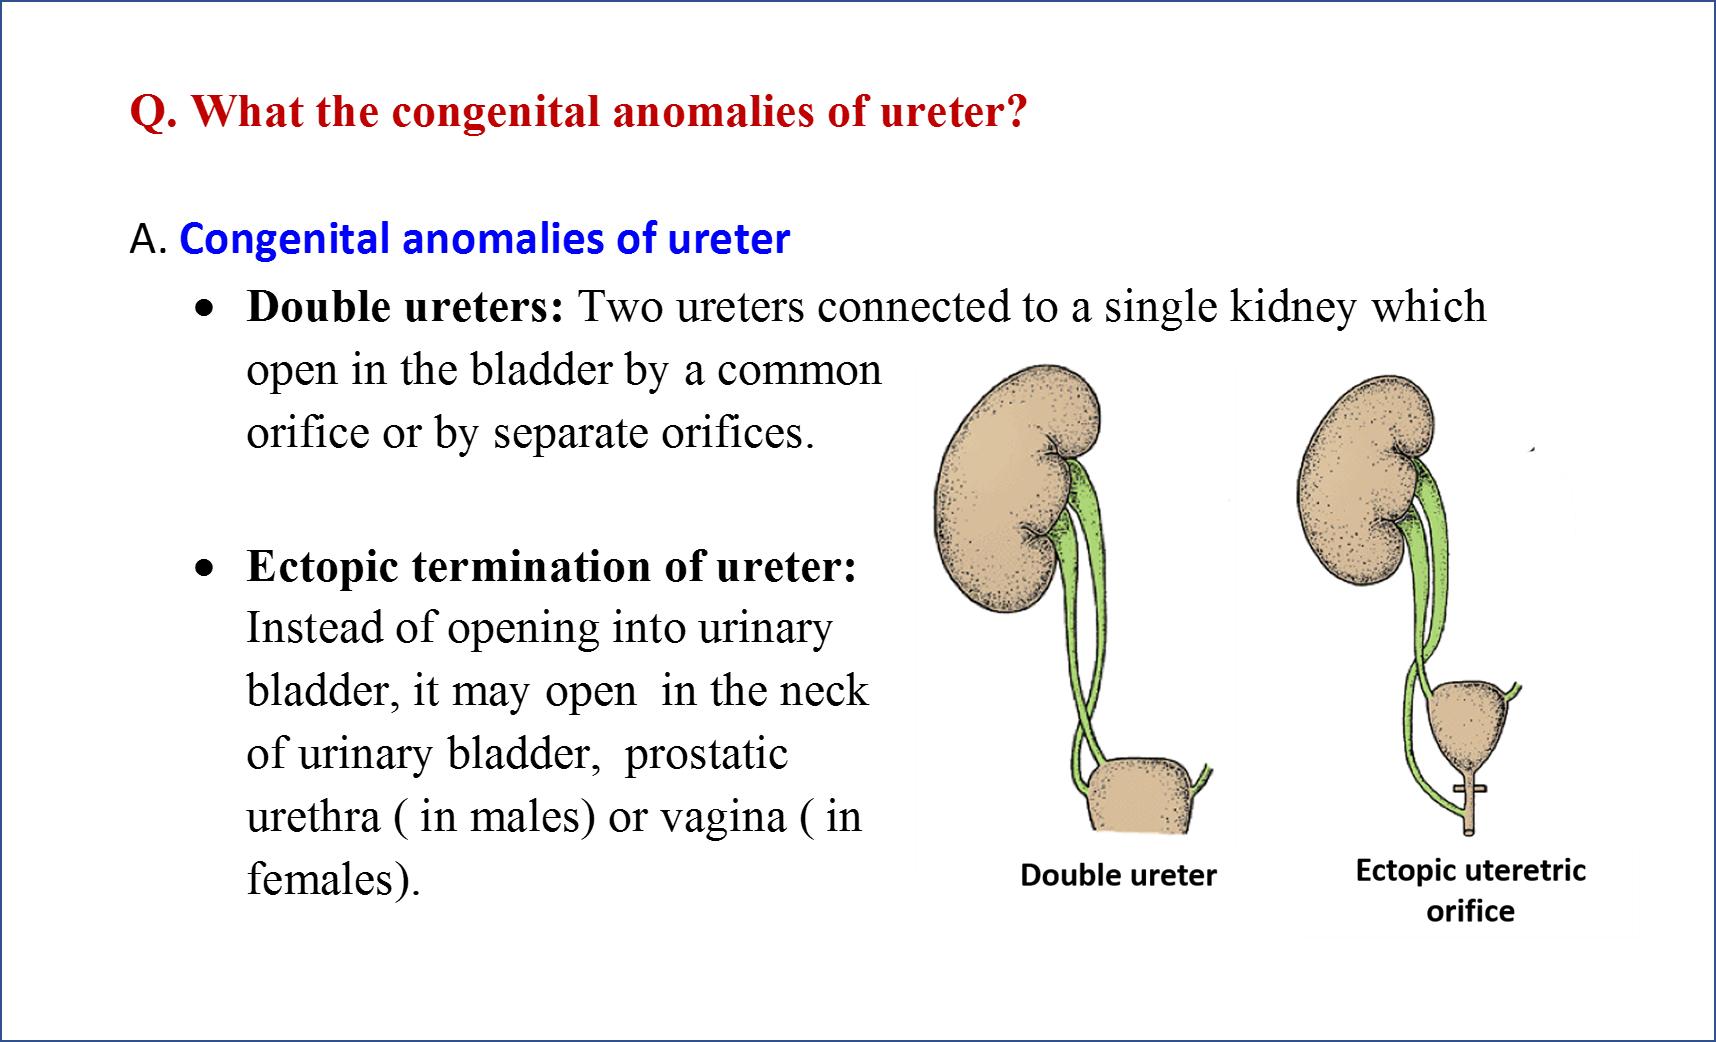 Congenital Anomalies of Ureter